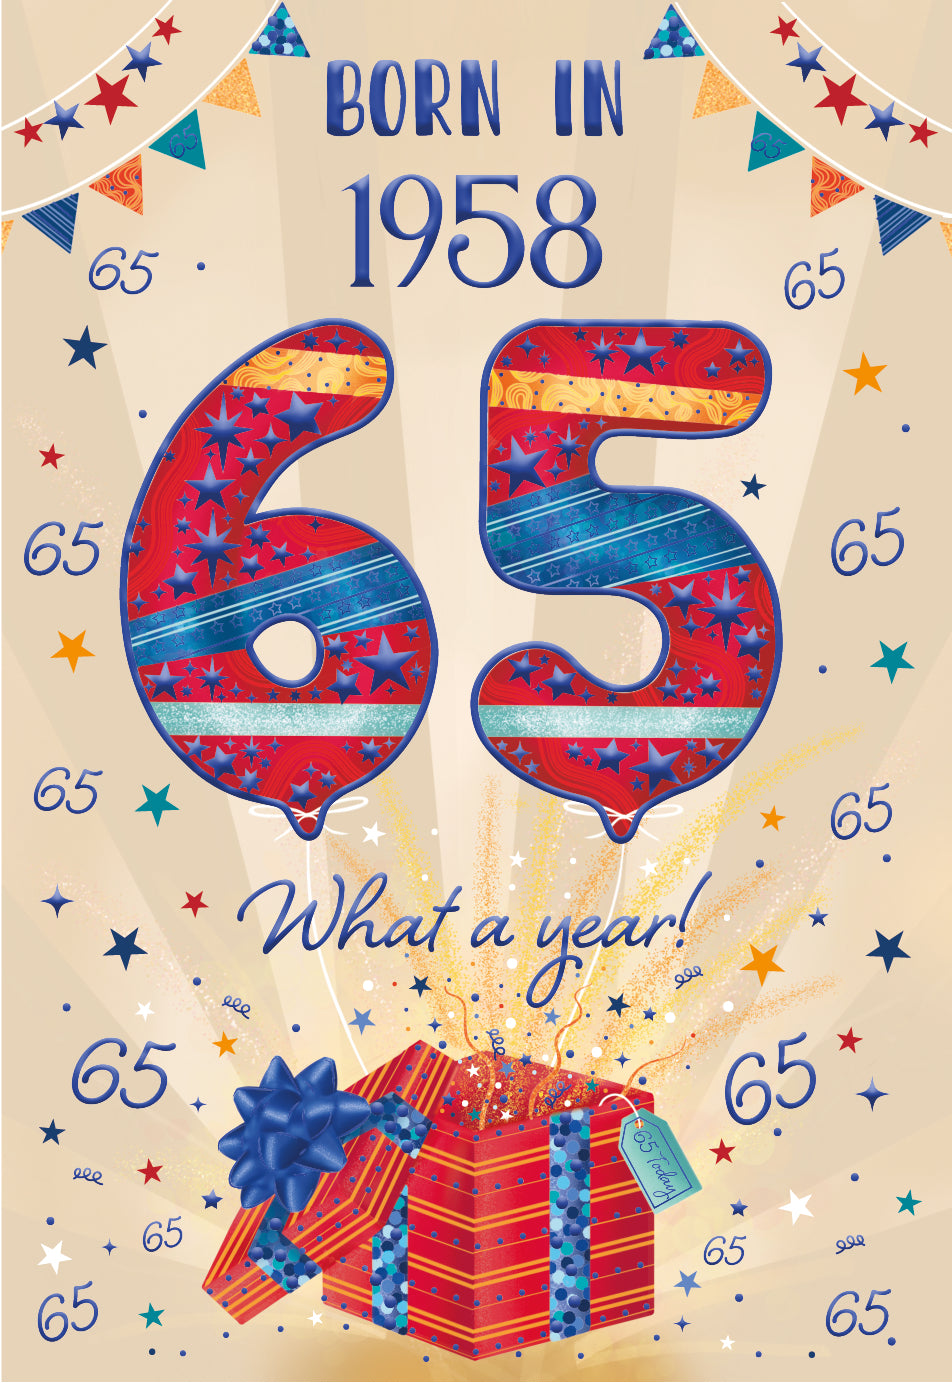 65th birthday card - born in 1958